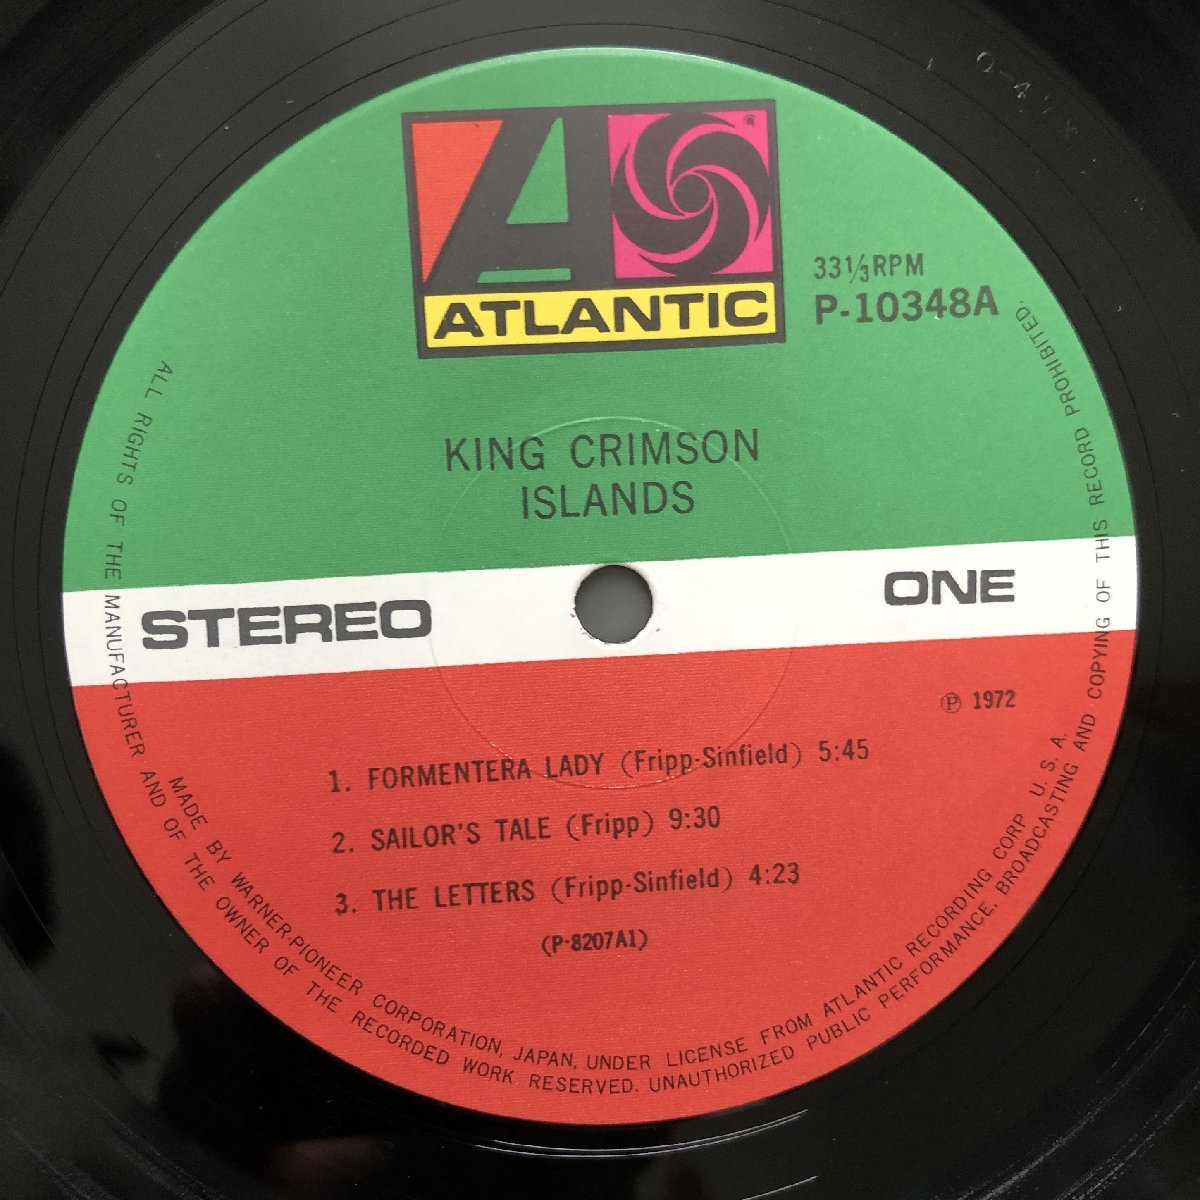  царапина нет прекрасный запись хорошо jacket 1977 год записано в Японии King * Crimson King Crimson LP запись Islay nzIslands Progres Robert Fripp